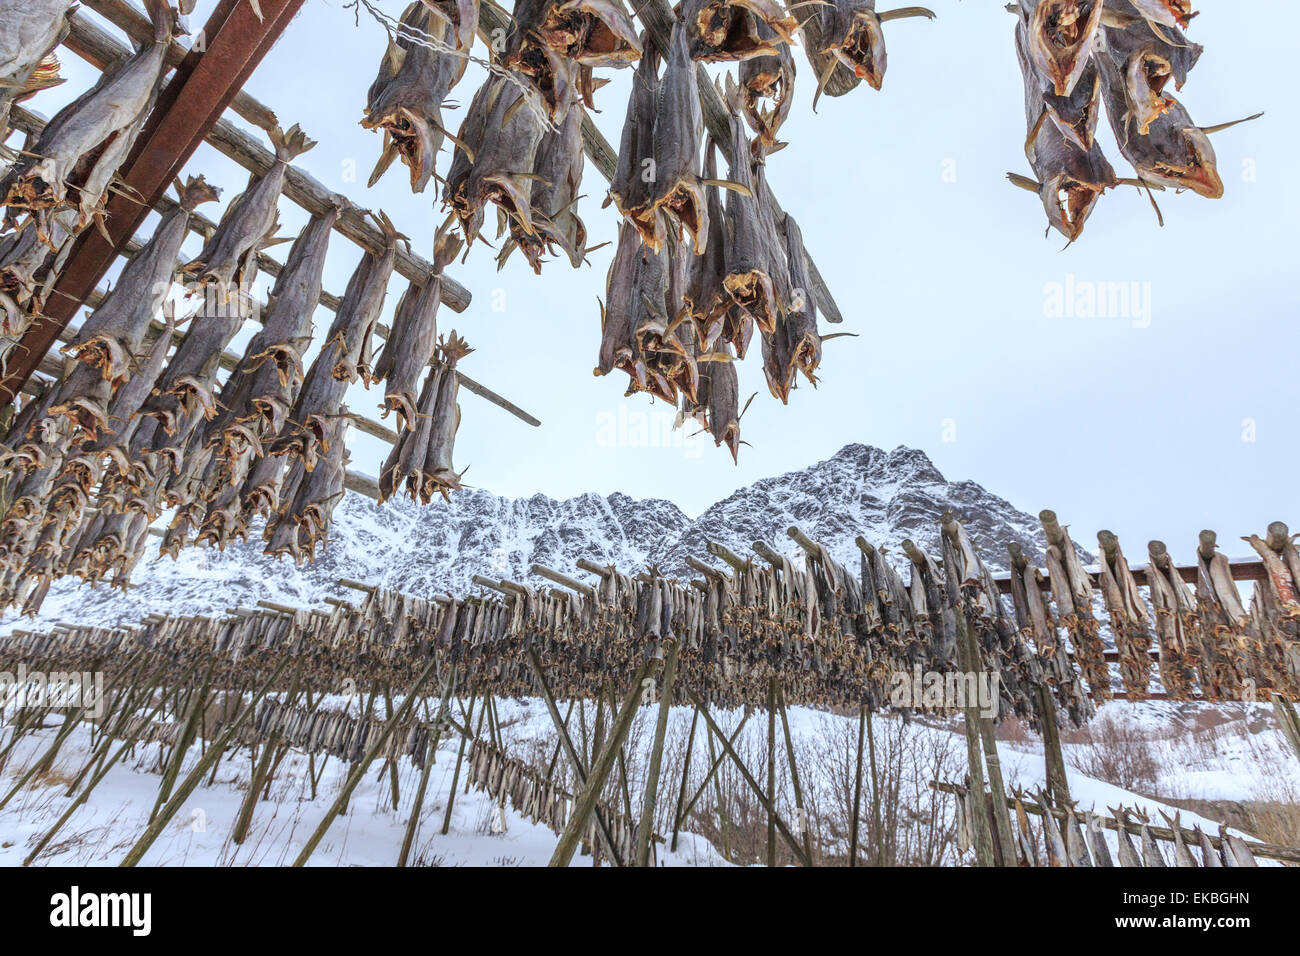 Kabeljau, ausgesetzt das Hauptprodukt von den Lofoten-Inseln zum Trocknen in die Sonne und Luft, Hamnoy, Lofoten-Inseln, Arktis, Norwegen Stockfoto